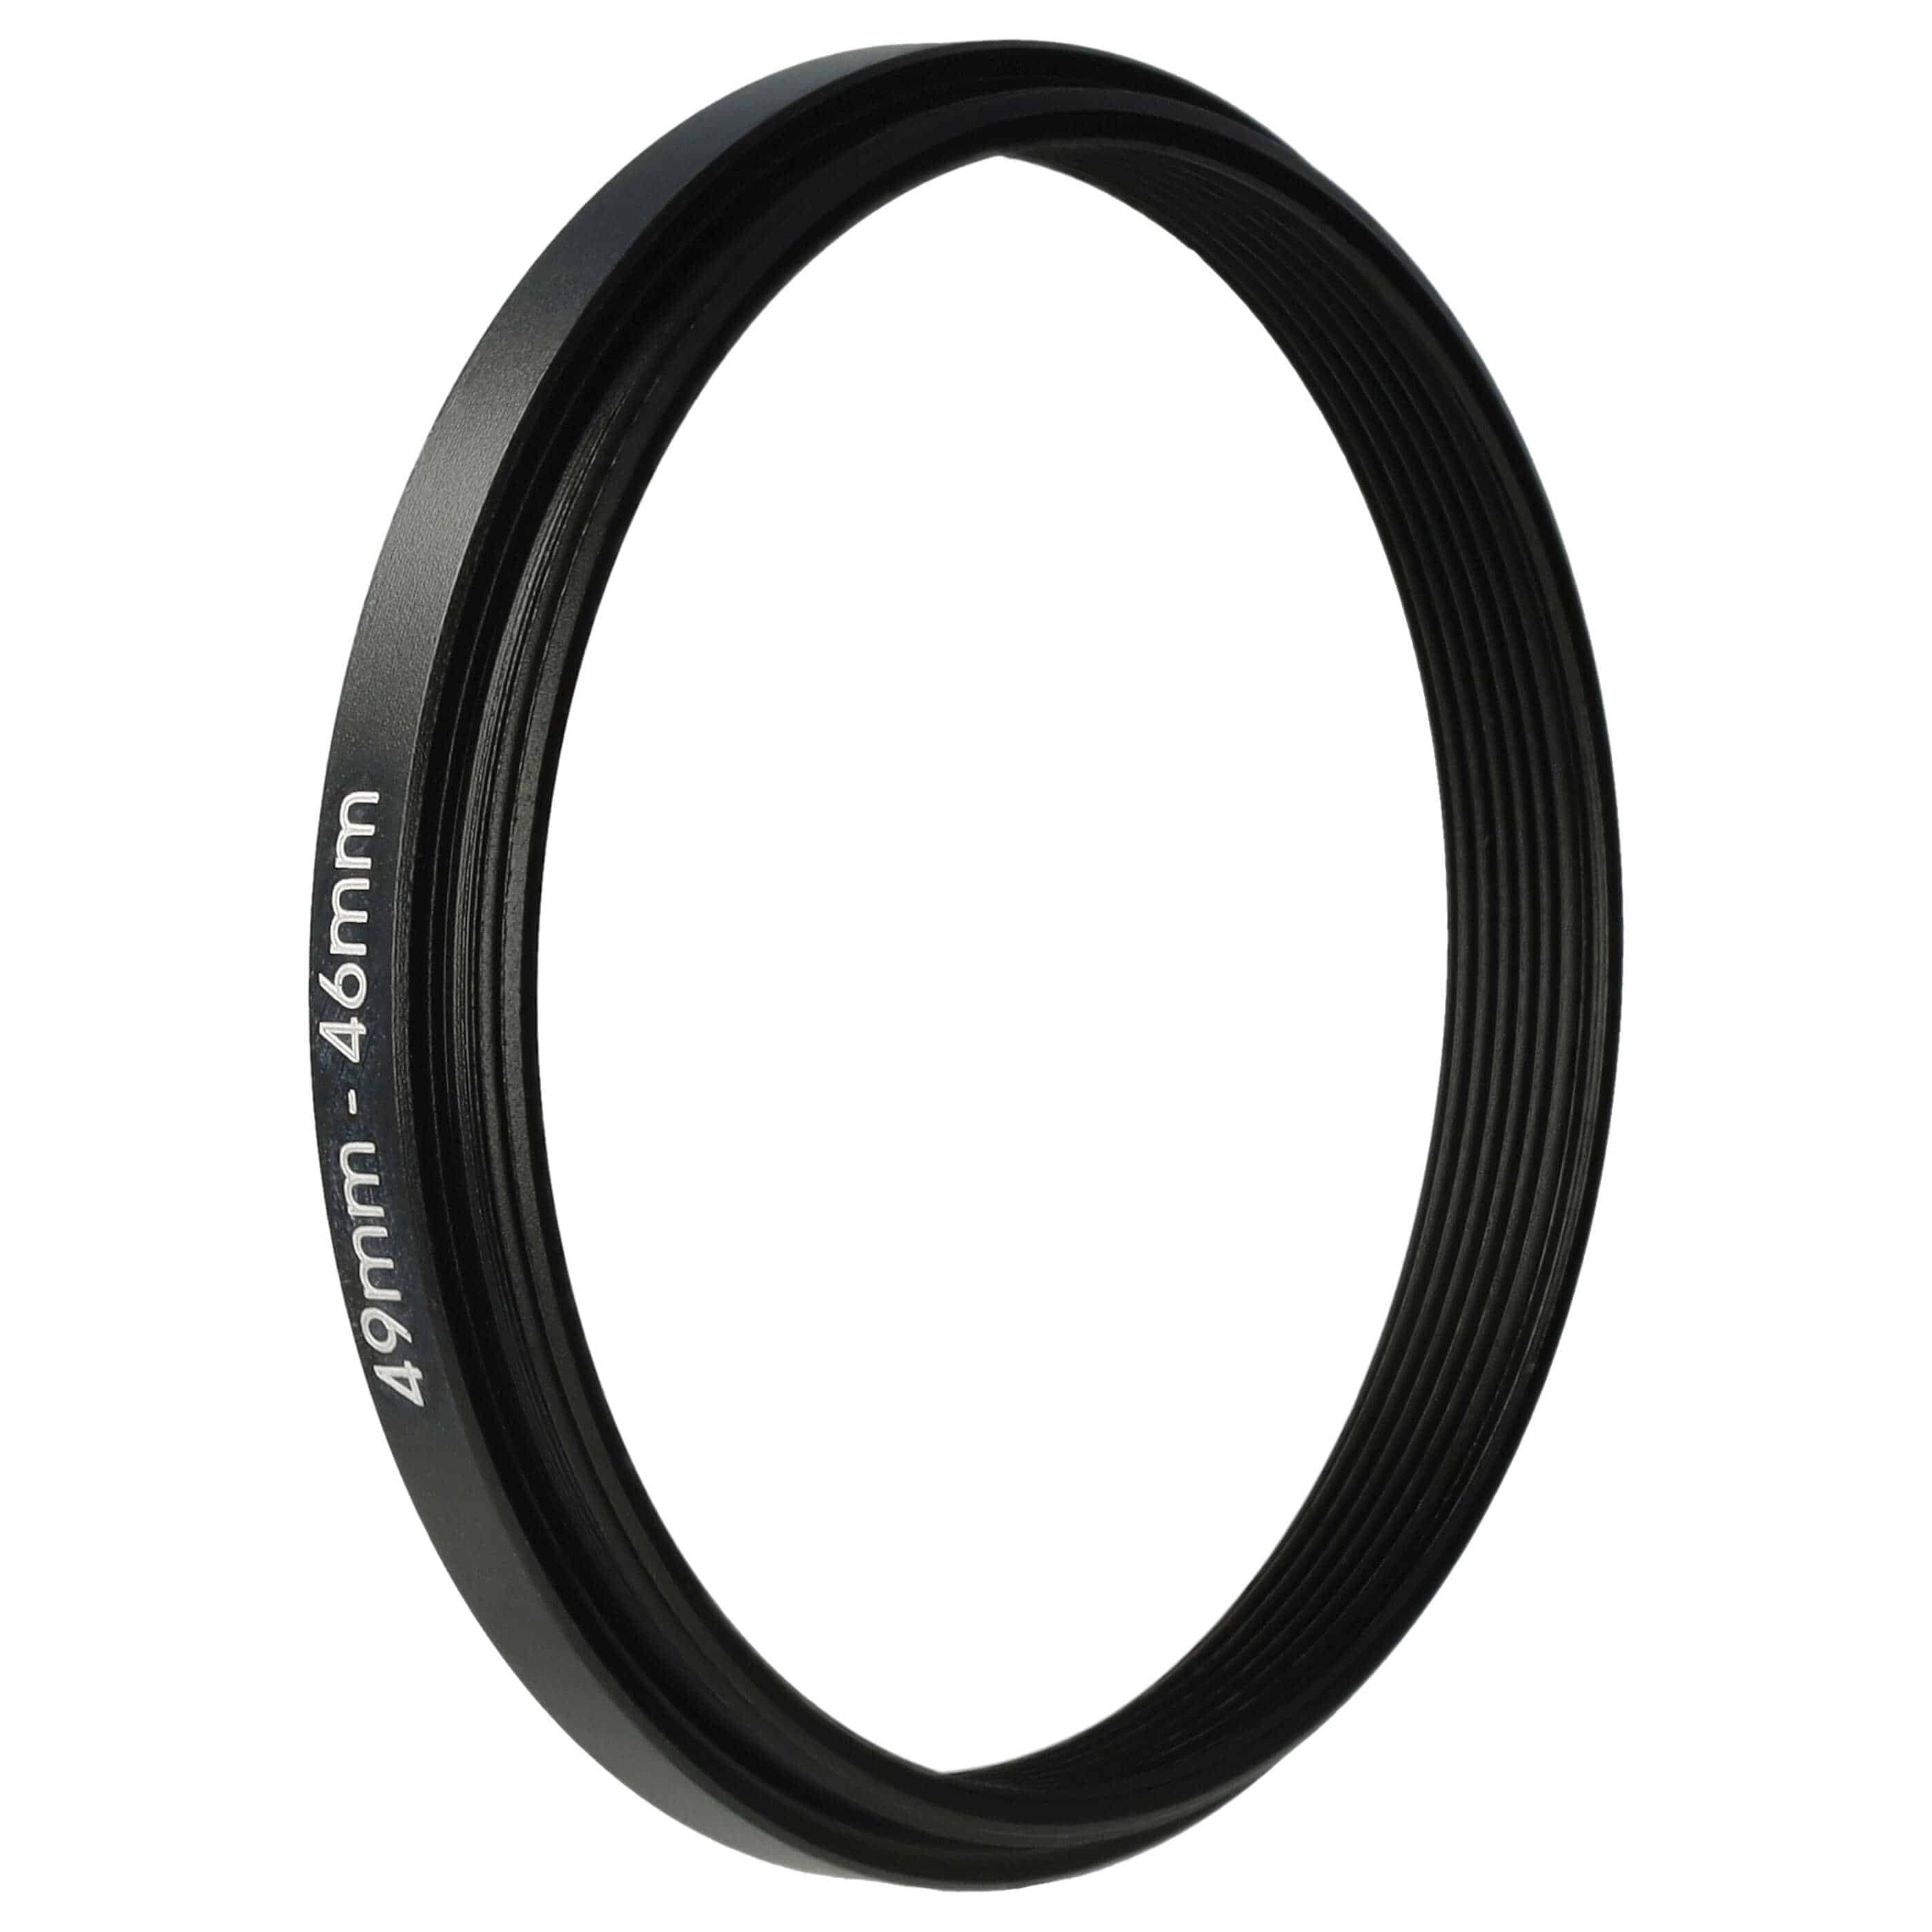 Anello adattatore step-down da 49 mm a 46 mm per obiettivo fotocamera - Adattatore filtro, metallo, nero